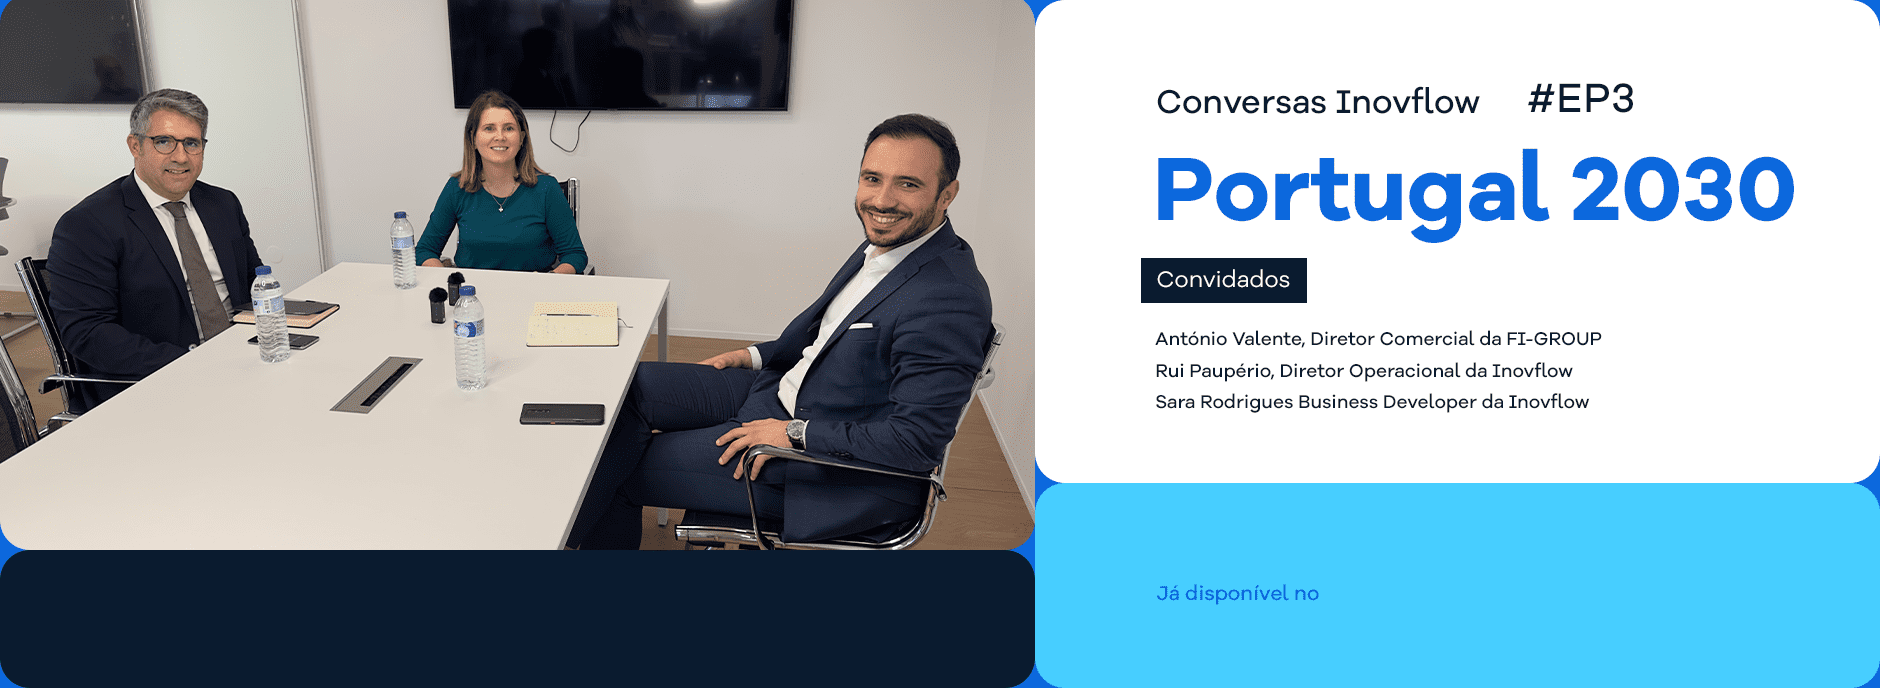 conversas inovflow podcast portugal 2030